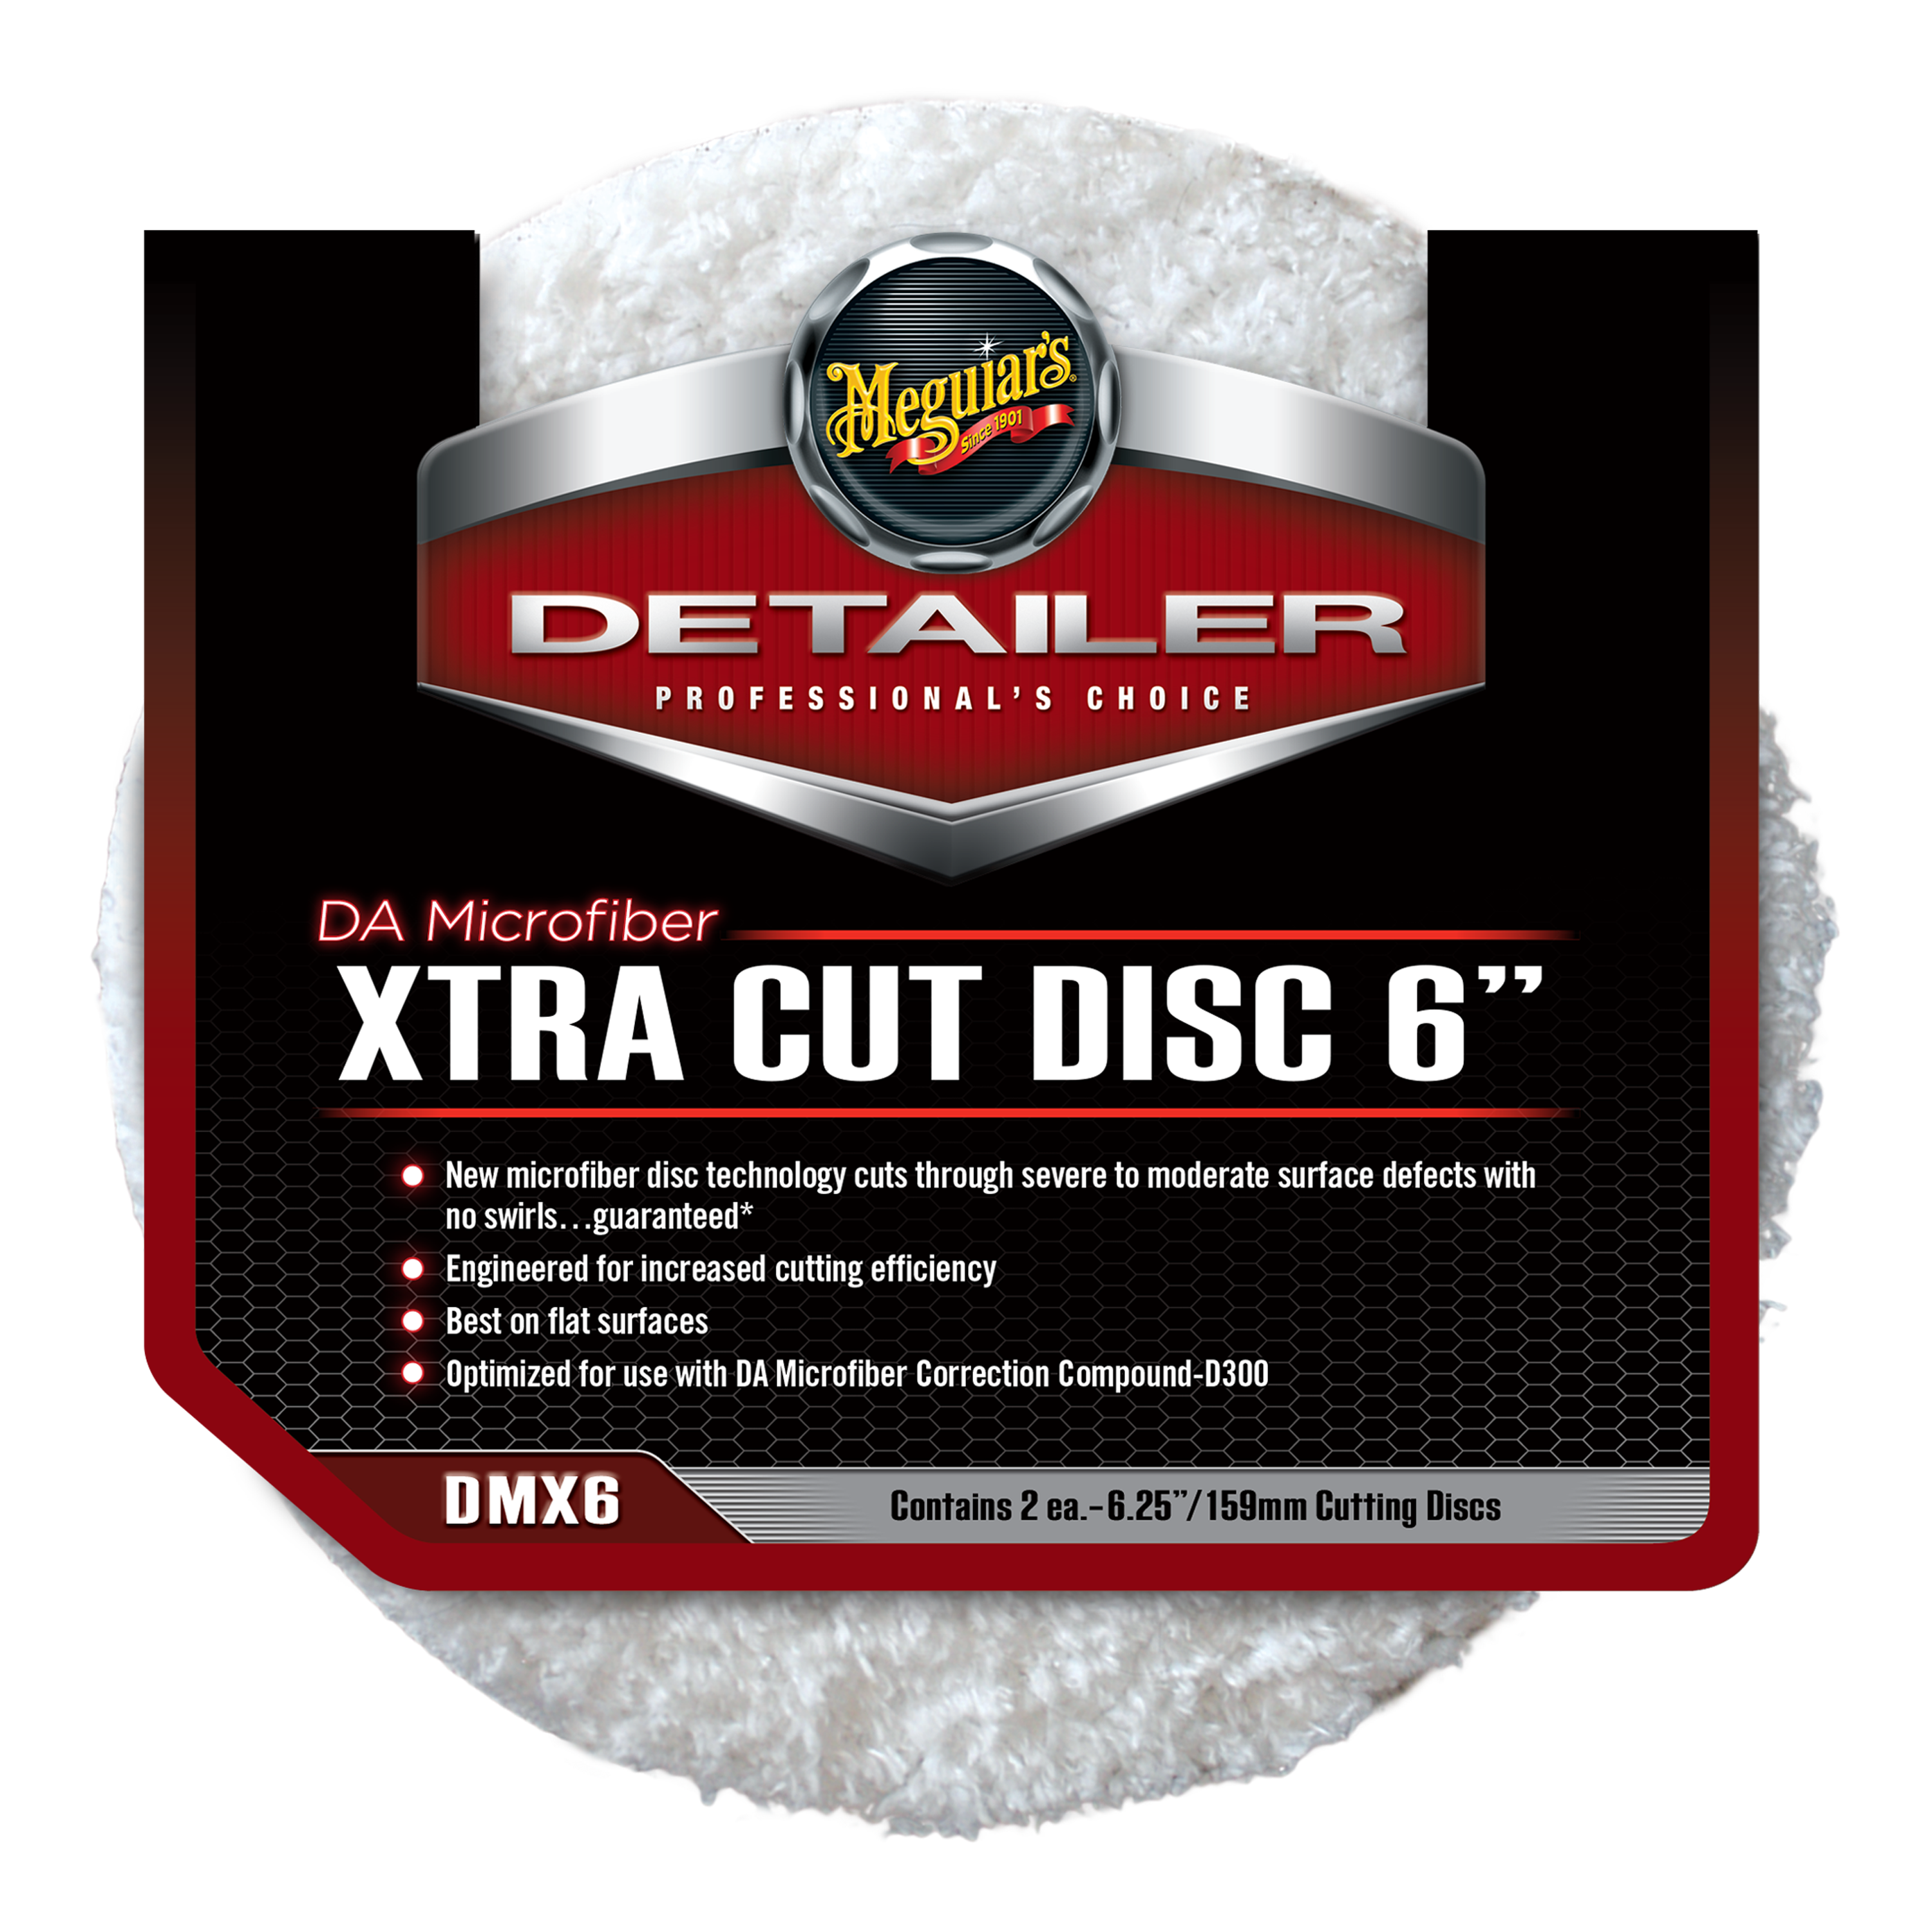 Meguiar's DA Microfiber Xtra Cut Disc – 6 Inch, DMX6, 2 Pack